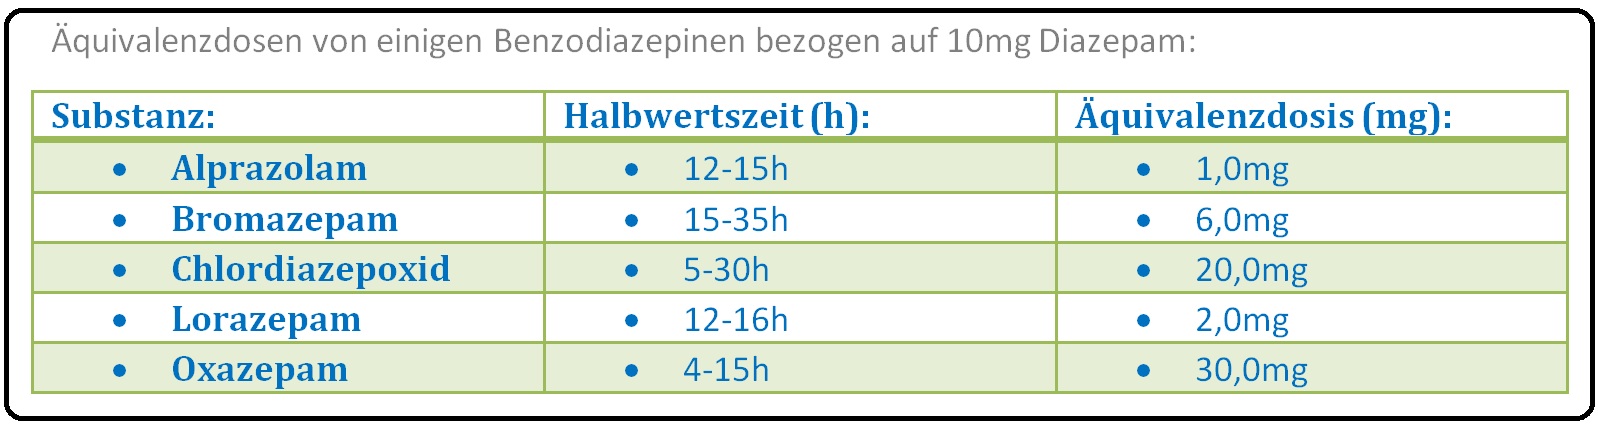 535 Äquivalenzdosen von einigen Benzodiazepinen bezogen auf 10mg Diazepam